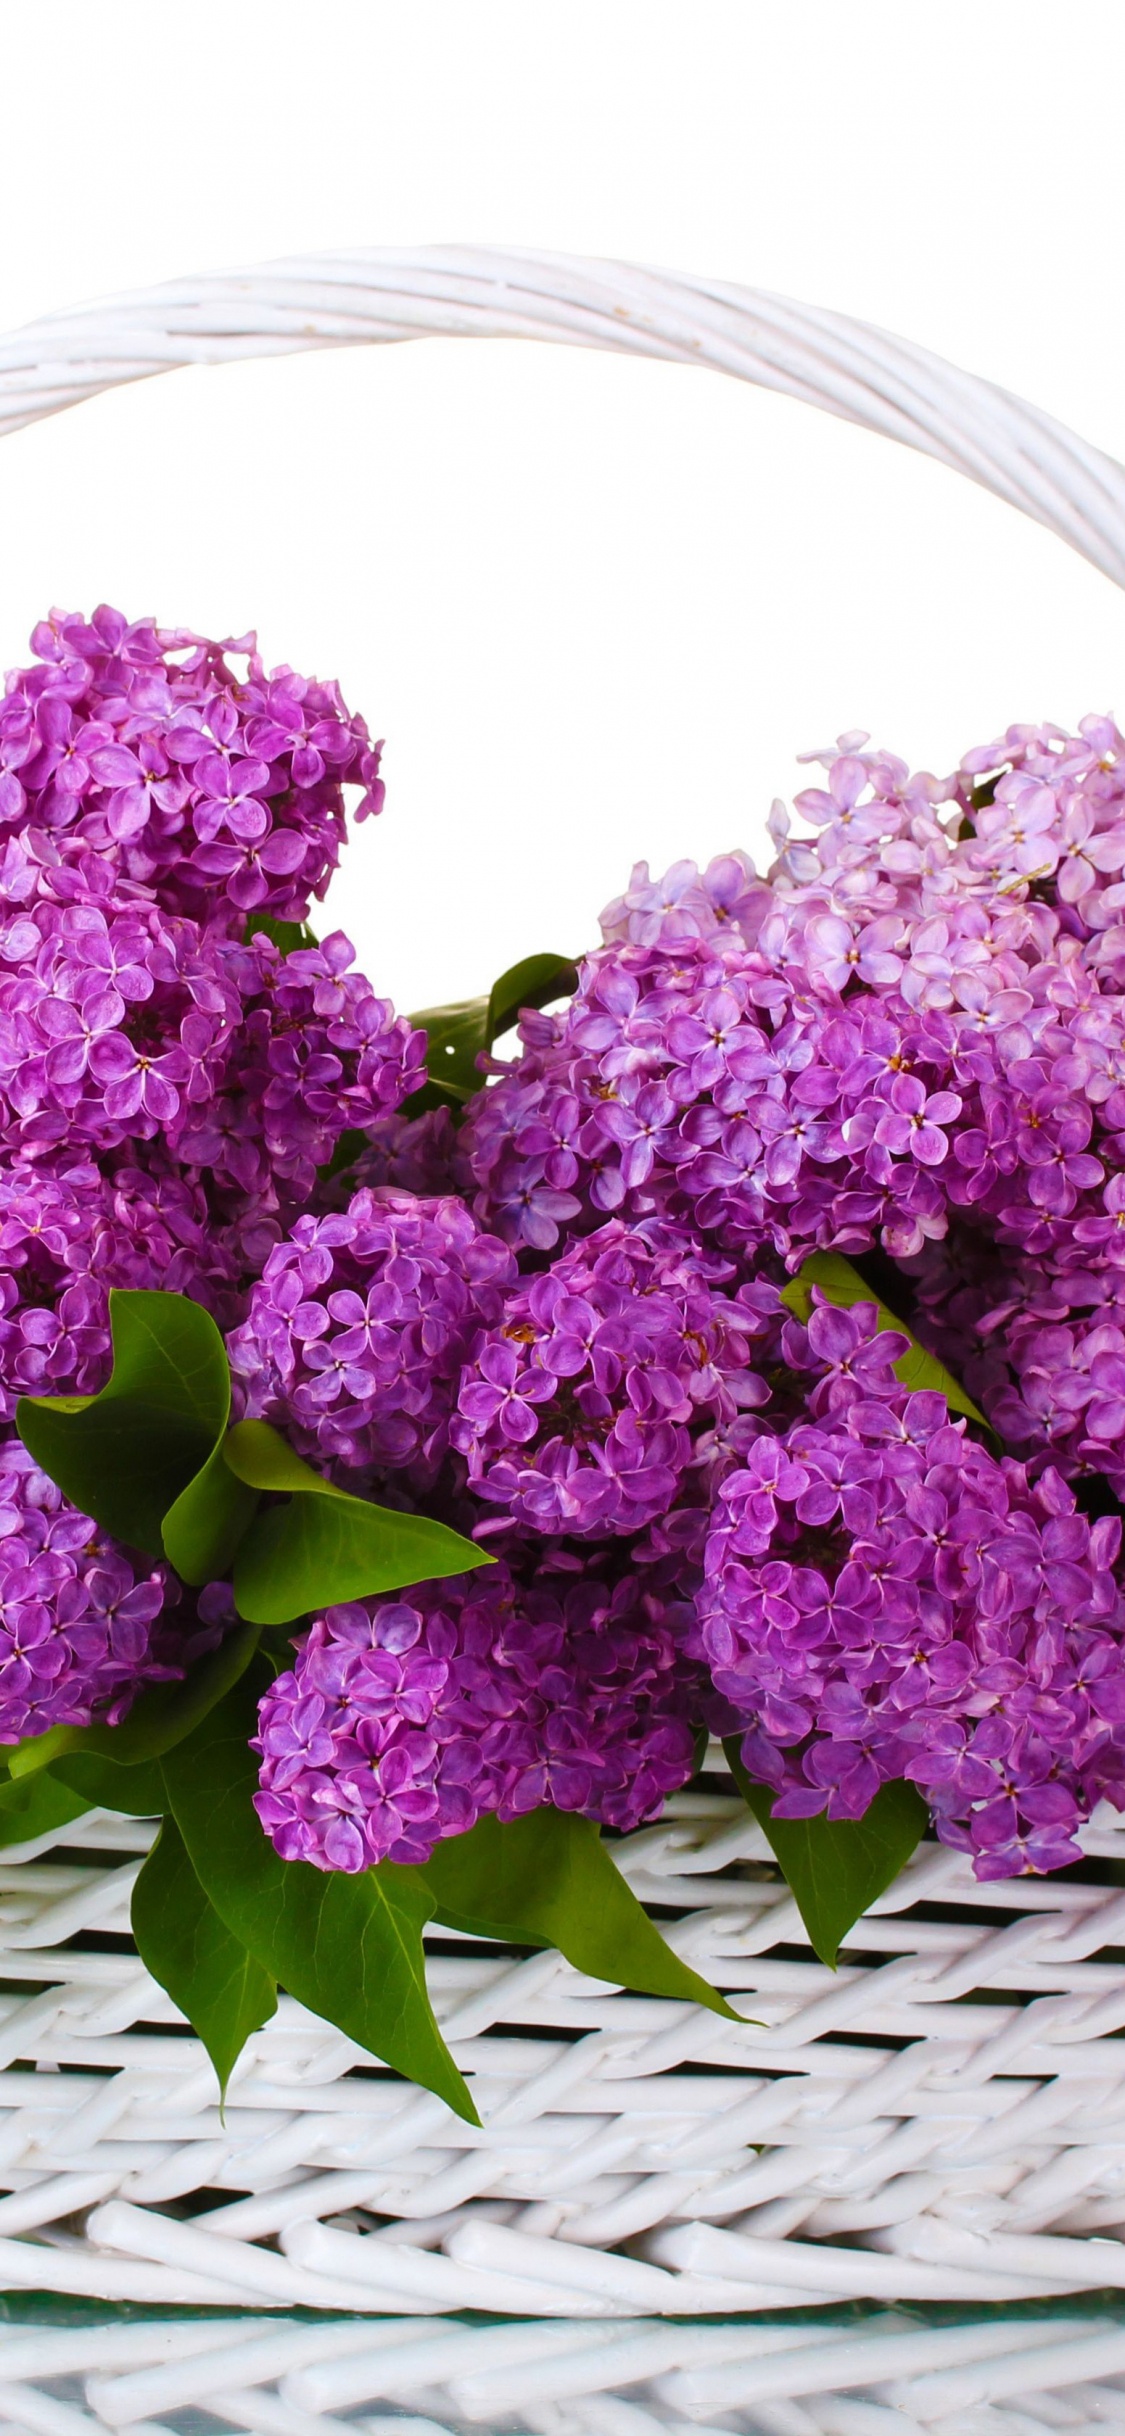 Fleurs Violettes Sur Panier Tressé. Wallpaper in 1125x2436 Resolution